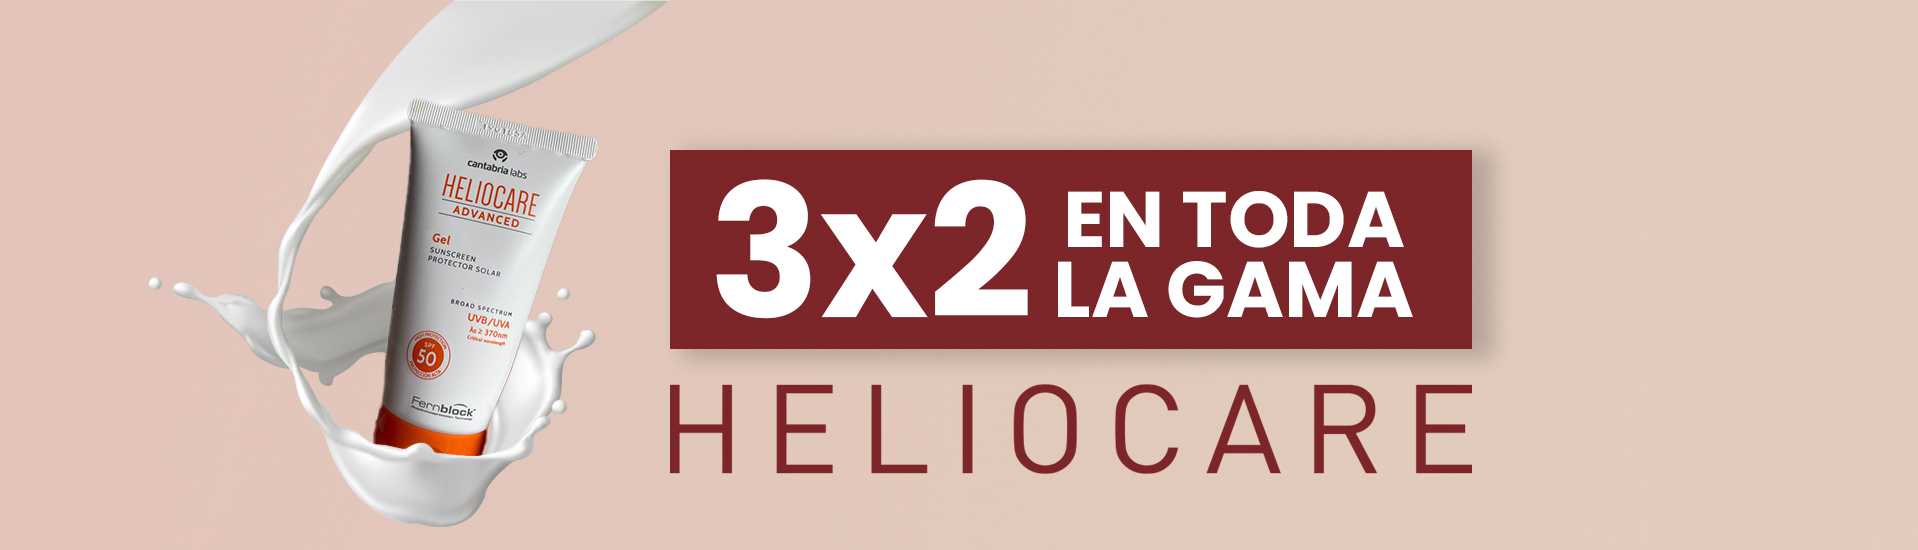 3x2 EN TODA LA GAMA HELIOCARE